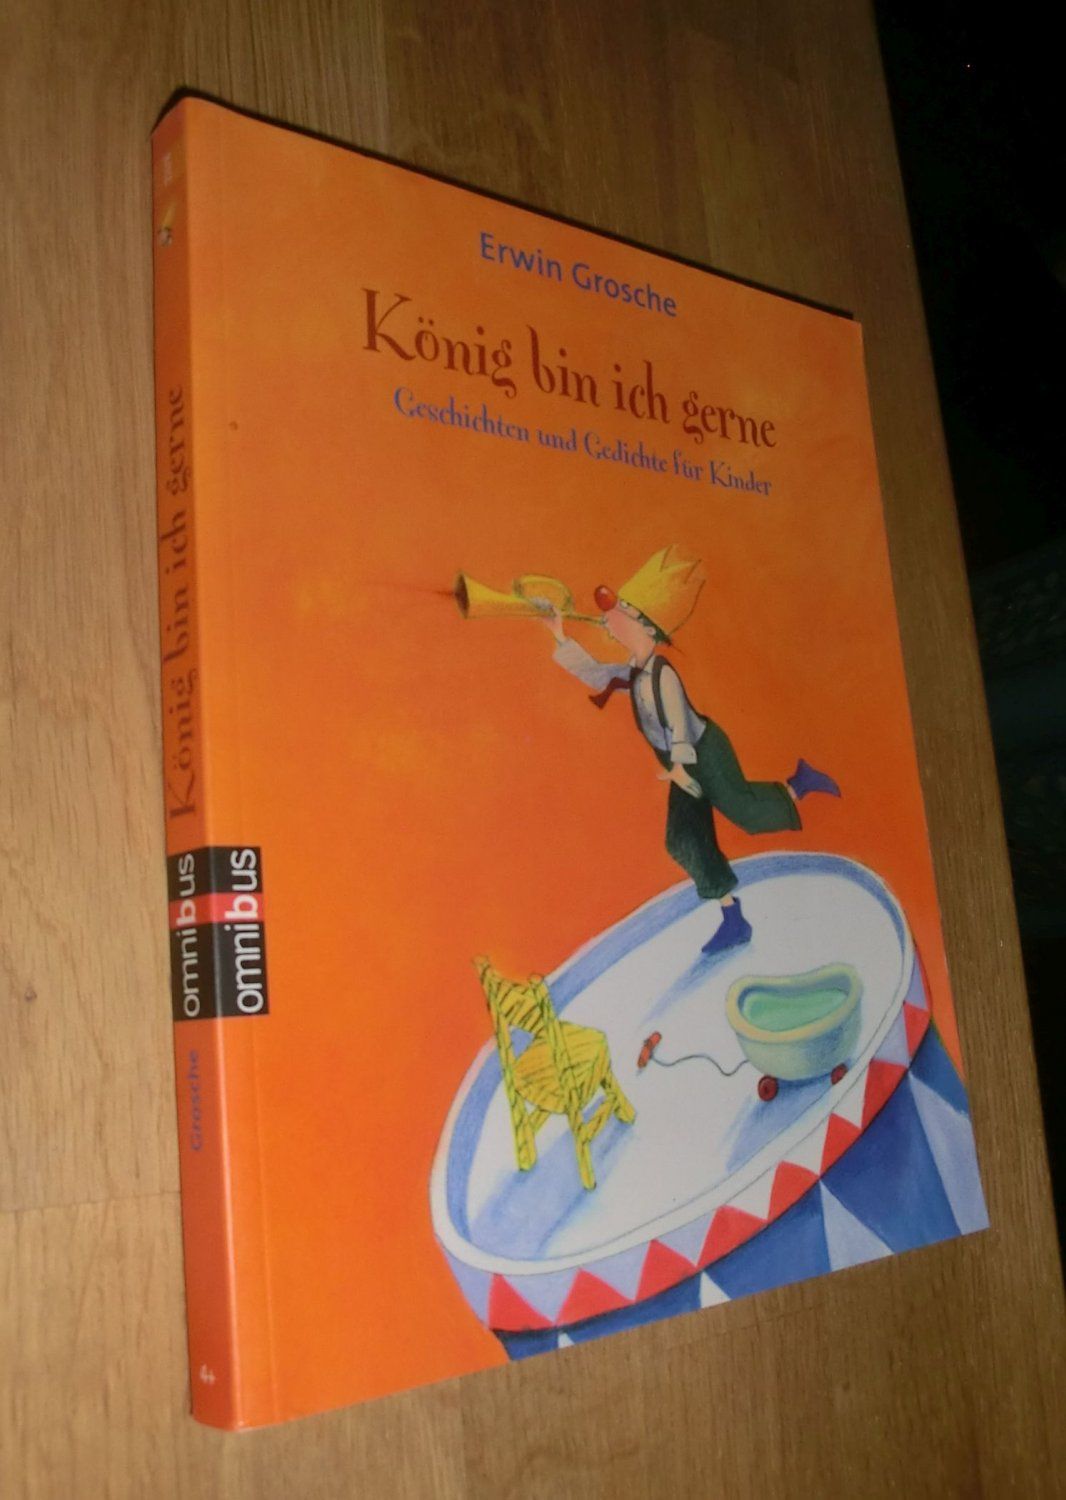 König bin ich gerne - Geschichten und Gedichte für Kinder  1. Auflage - Erwin Grosche